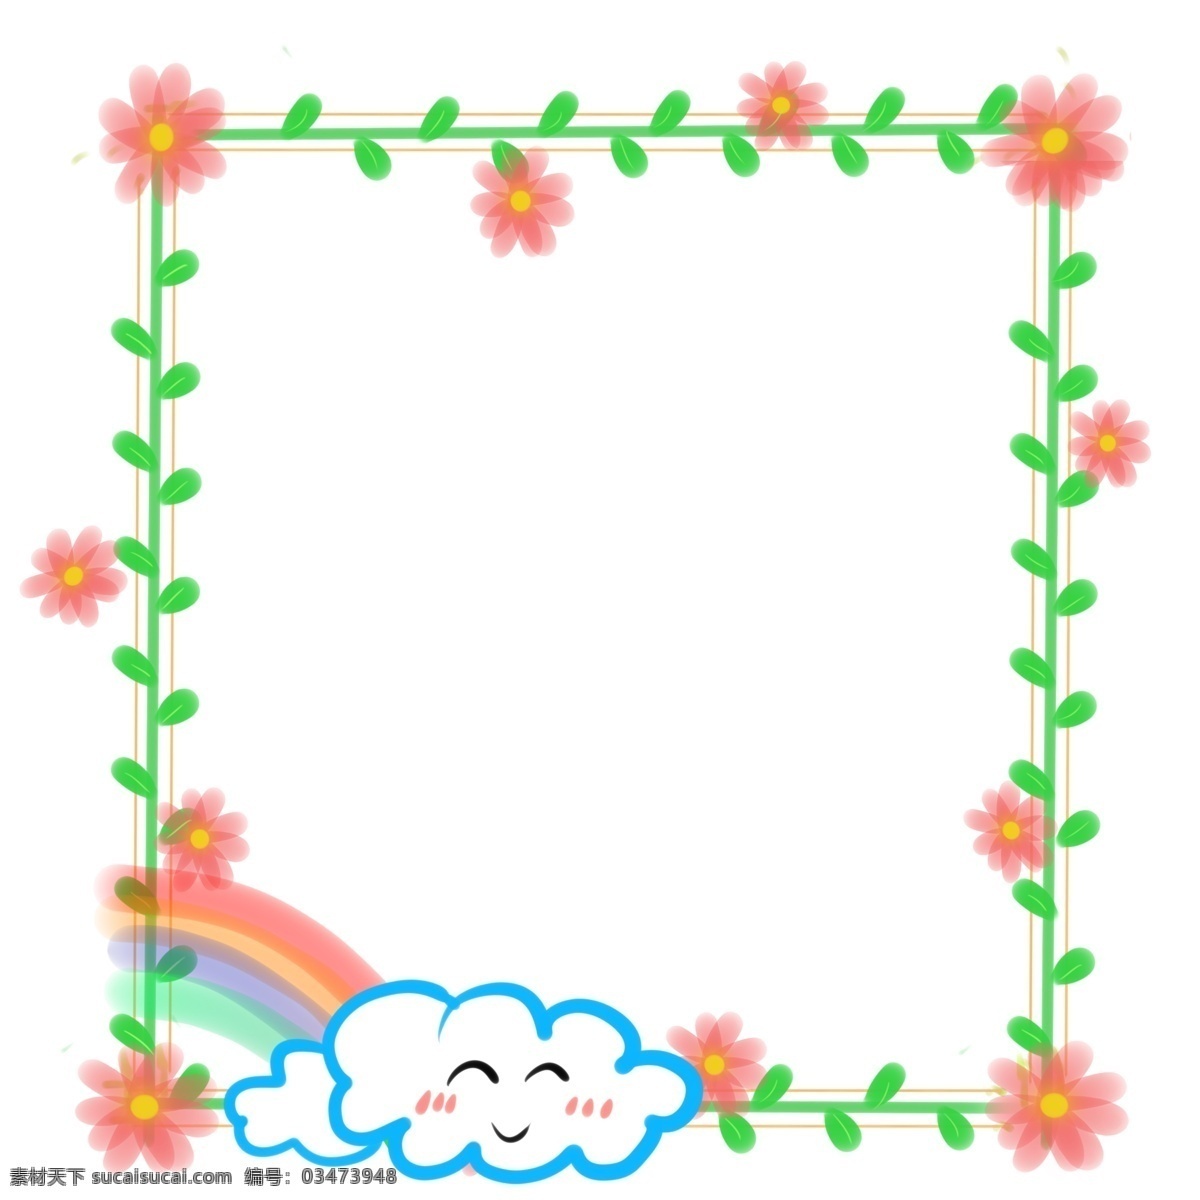 手绘 小花 边框 插画 手绘小花边框 粉色花朵边框 绿色植物边框 云朵边框 可爱的边框 边框装饰